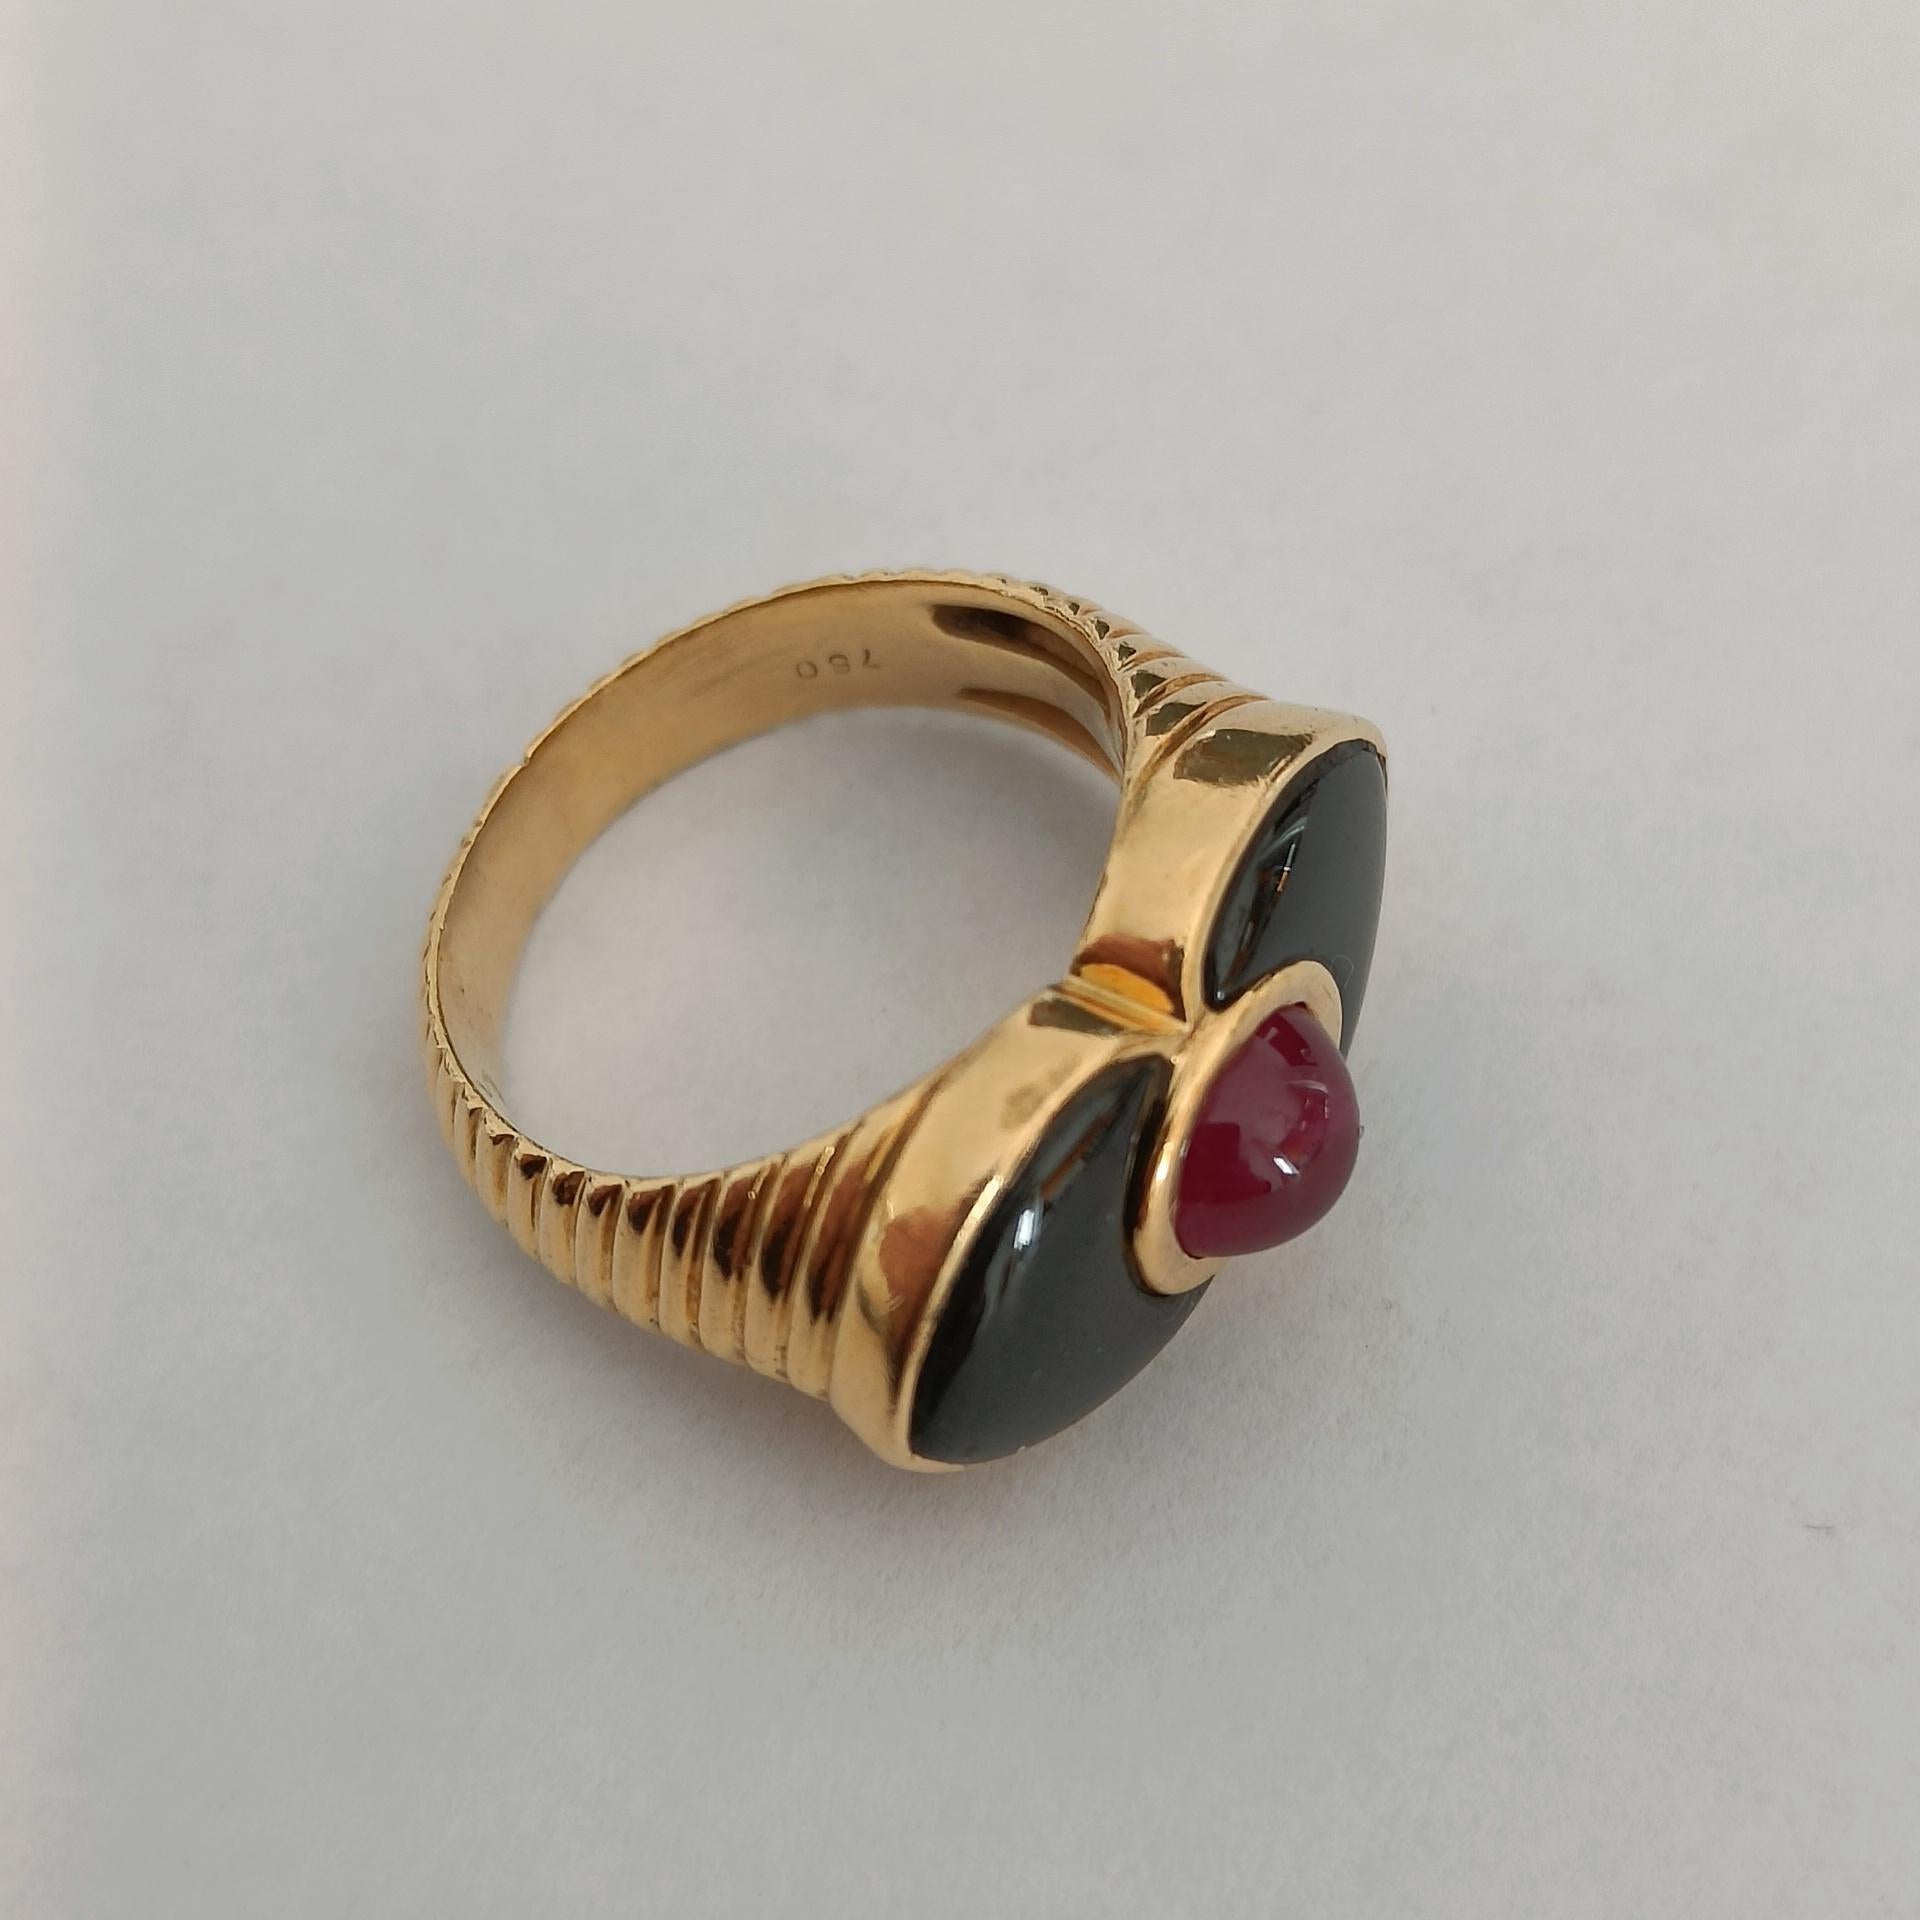 Ein Ring aus 18-karätigem Godronné-Gold mit einem Rubin-Cabochon, der von zwei spitz zulaufenden Onyx-Platten umrahmt ist. Schöne Blumenkomposition. Gestempelt 750.

Größe: FR 50 - US 5 (ca.)
Gewicht 8,10 Gramm

Sehr guter Zustand